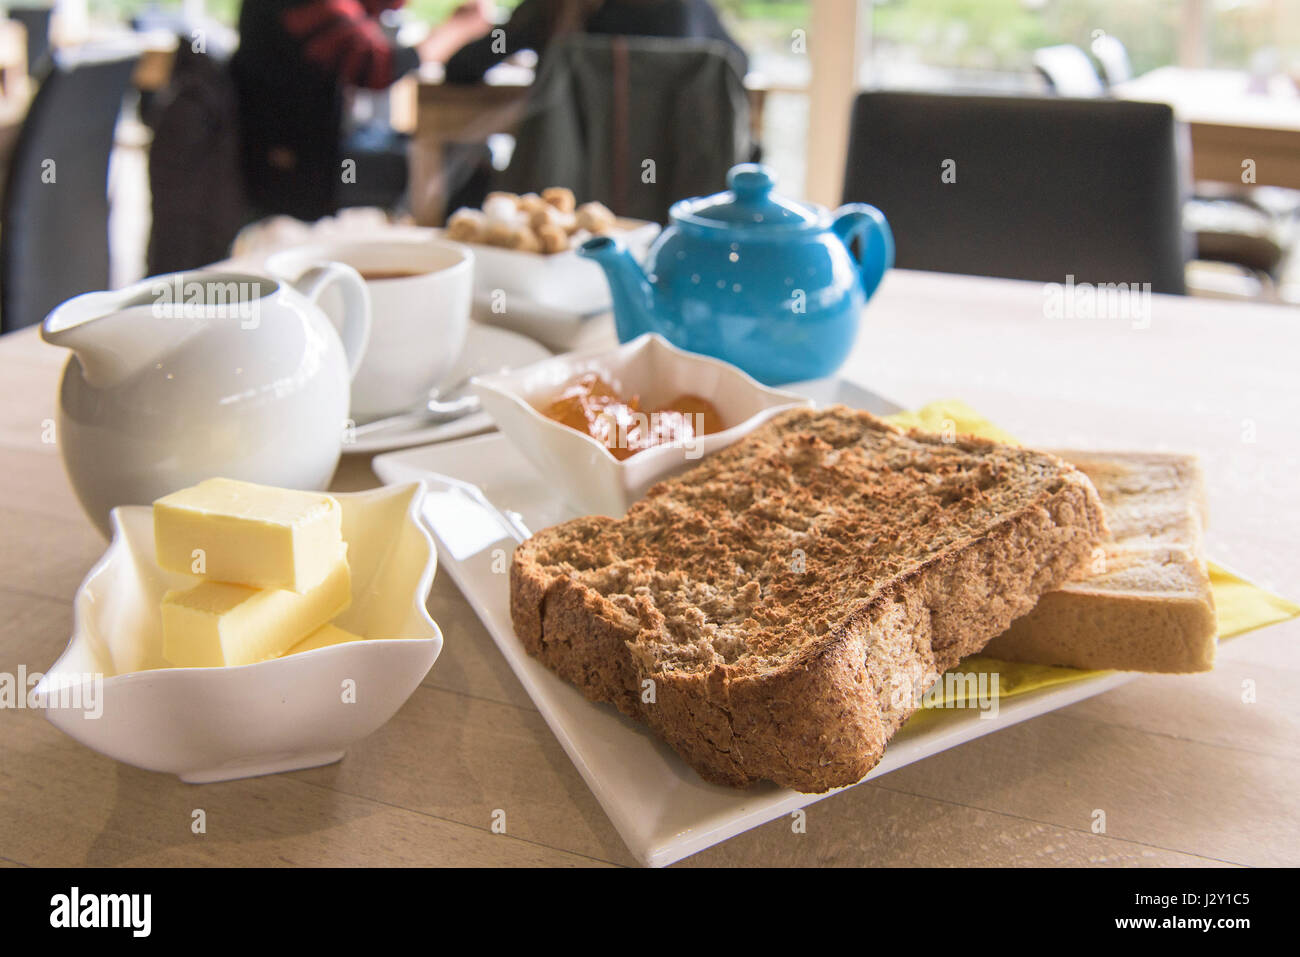 Piatti per la colazione tè toast e marmellata fette biscottate teiera stoviglie pasto mattutino Restaurant Cafe Foto Stock